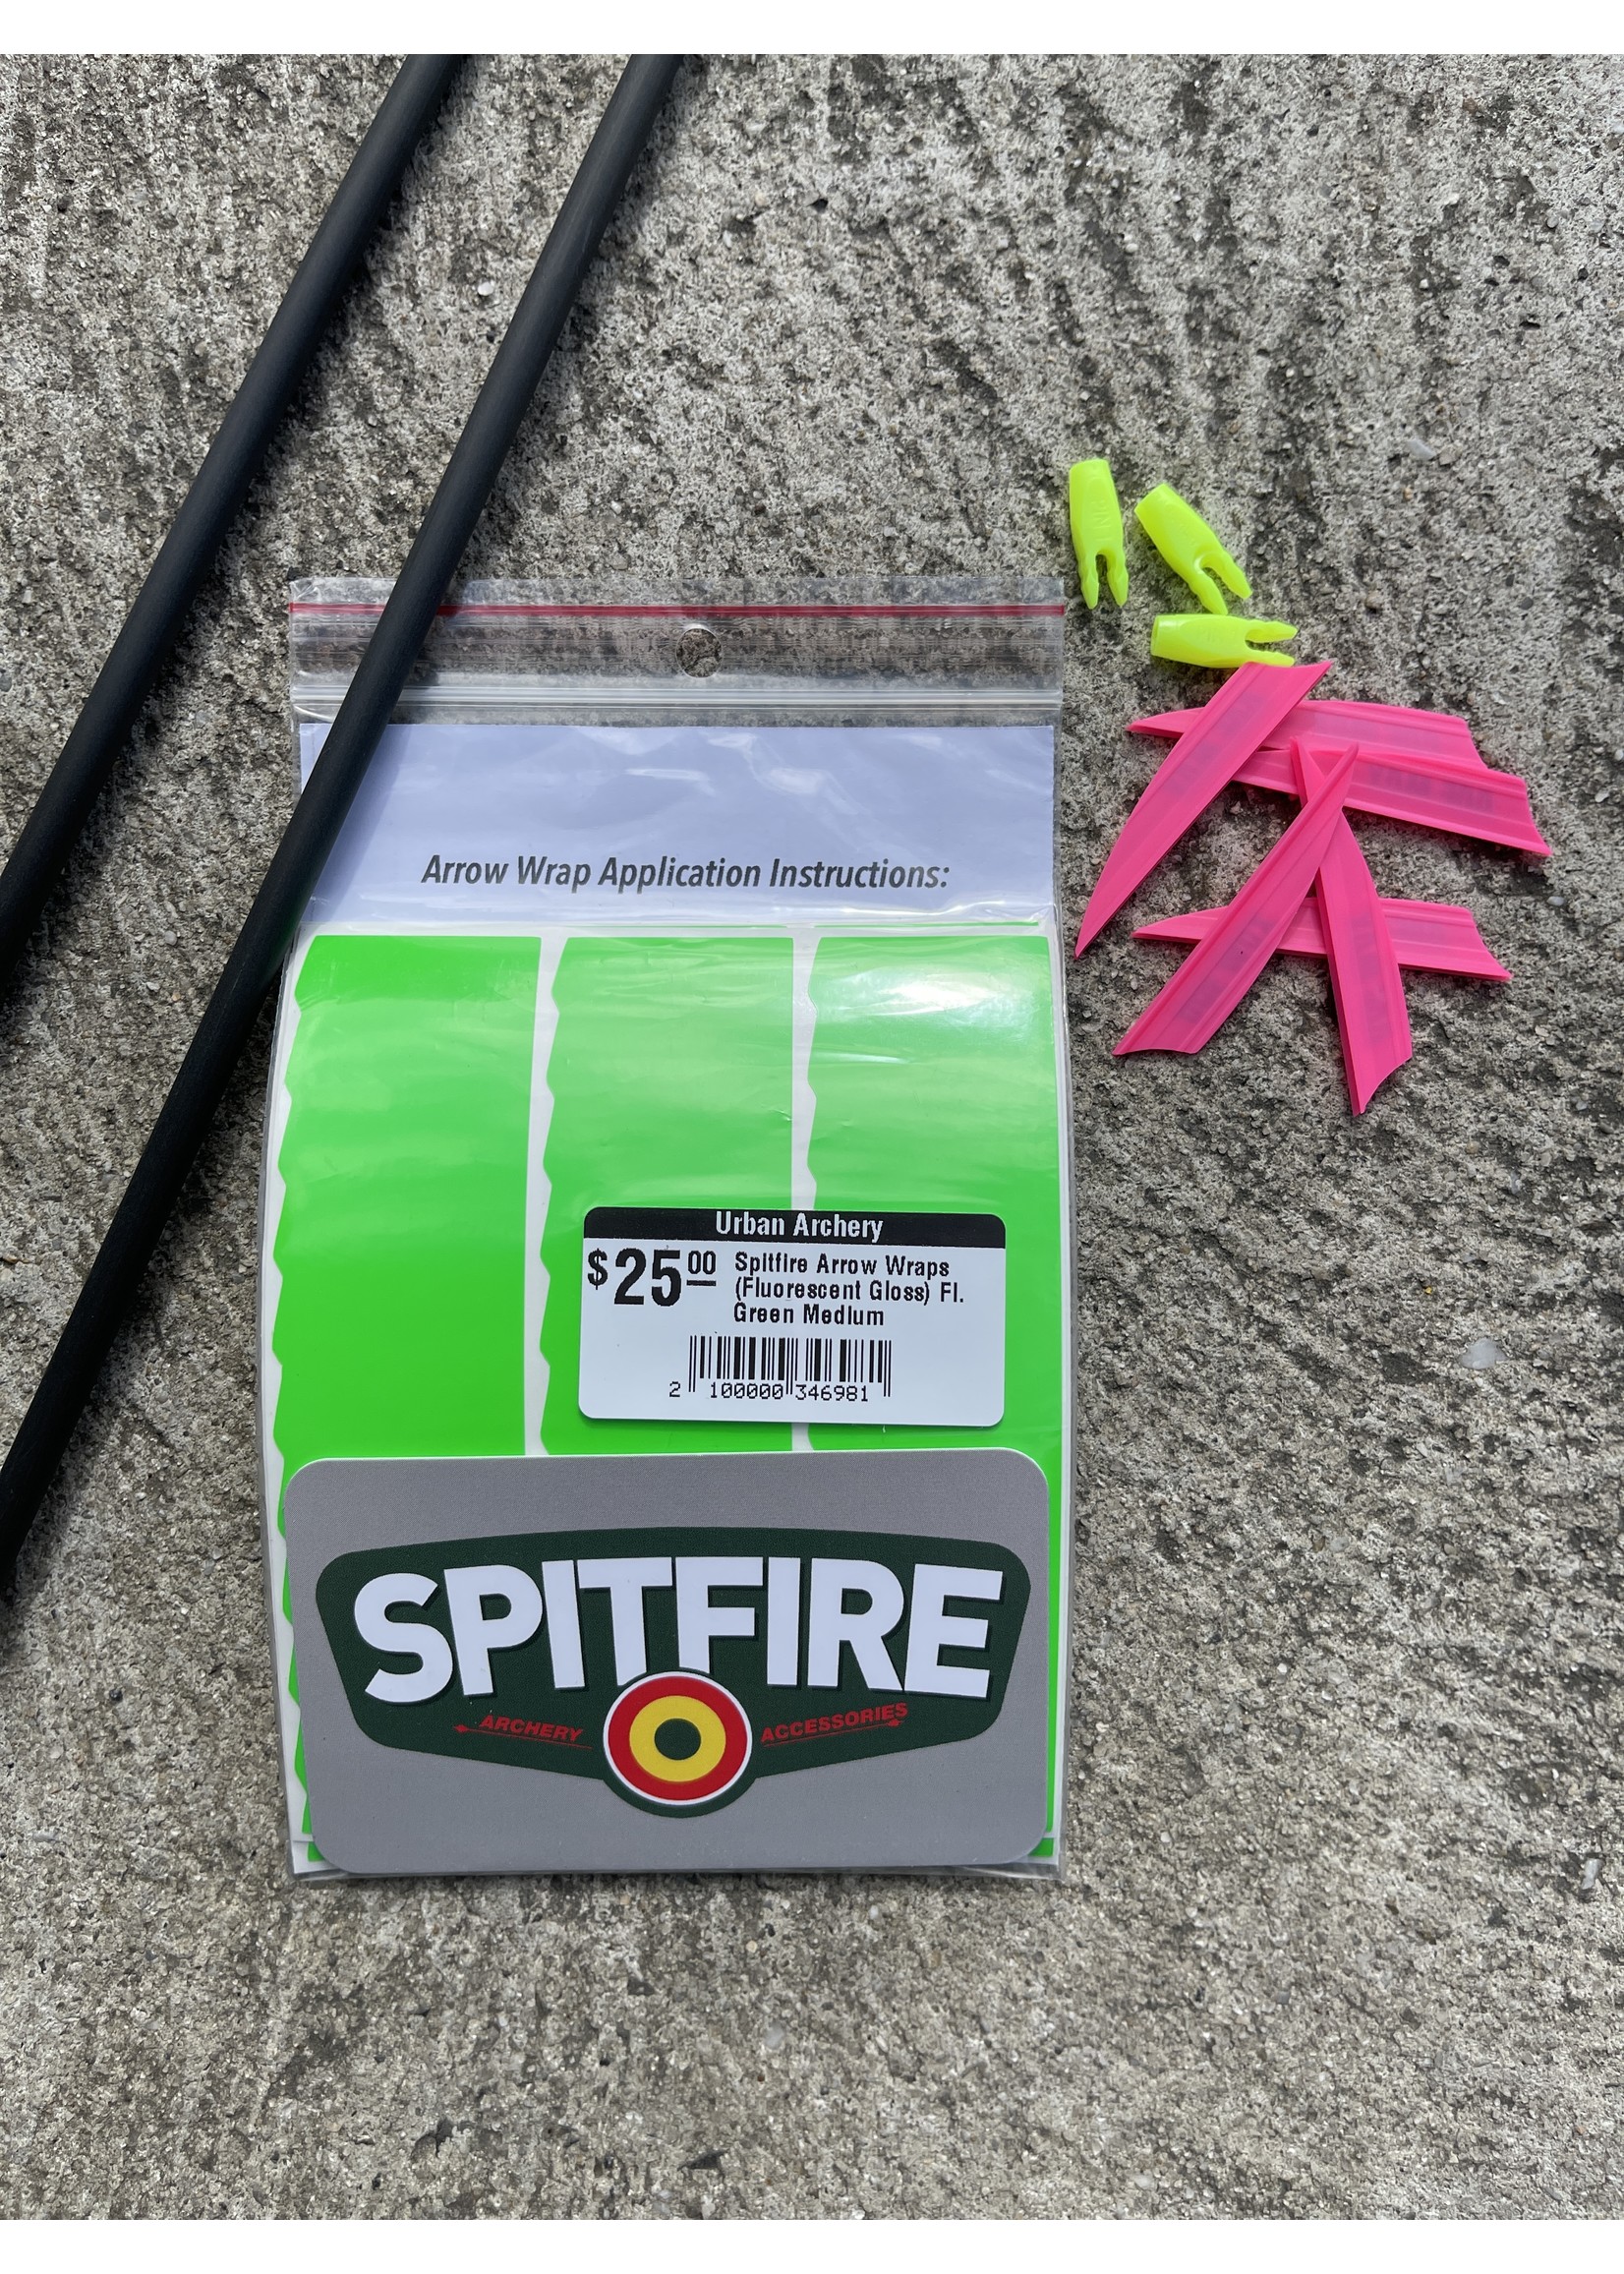 Spitfire Spitfire Arrow Wraps (Fluorescent Gloss)